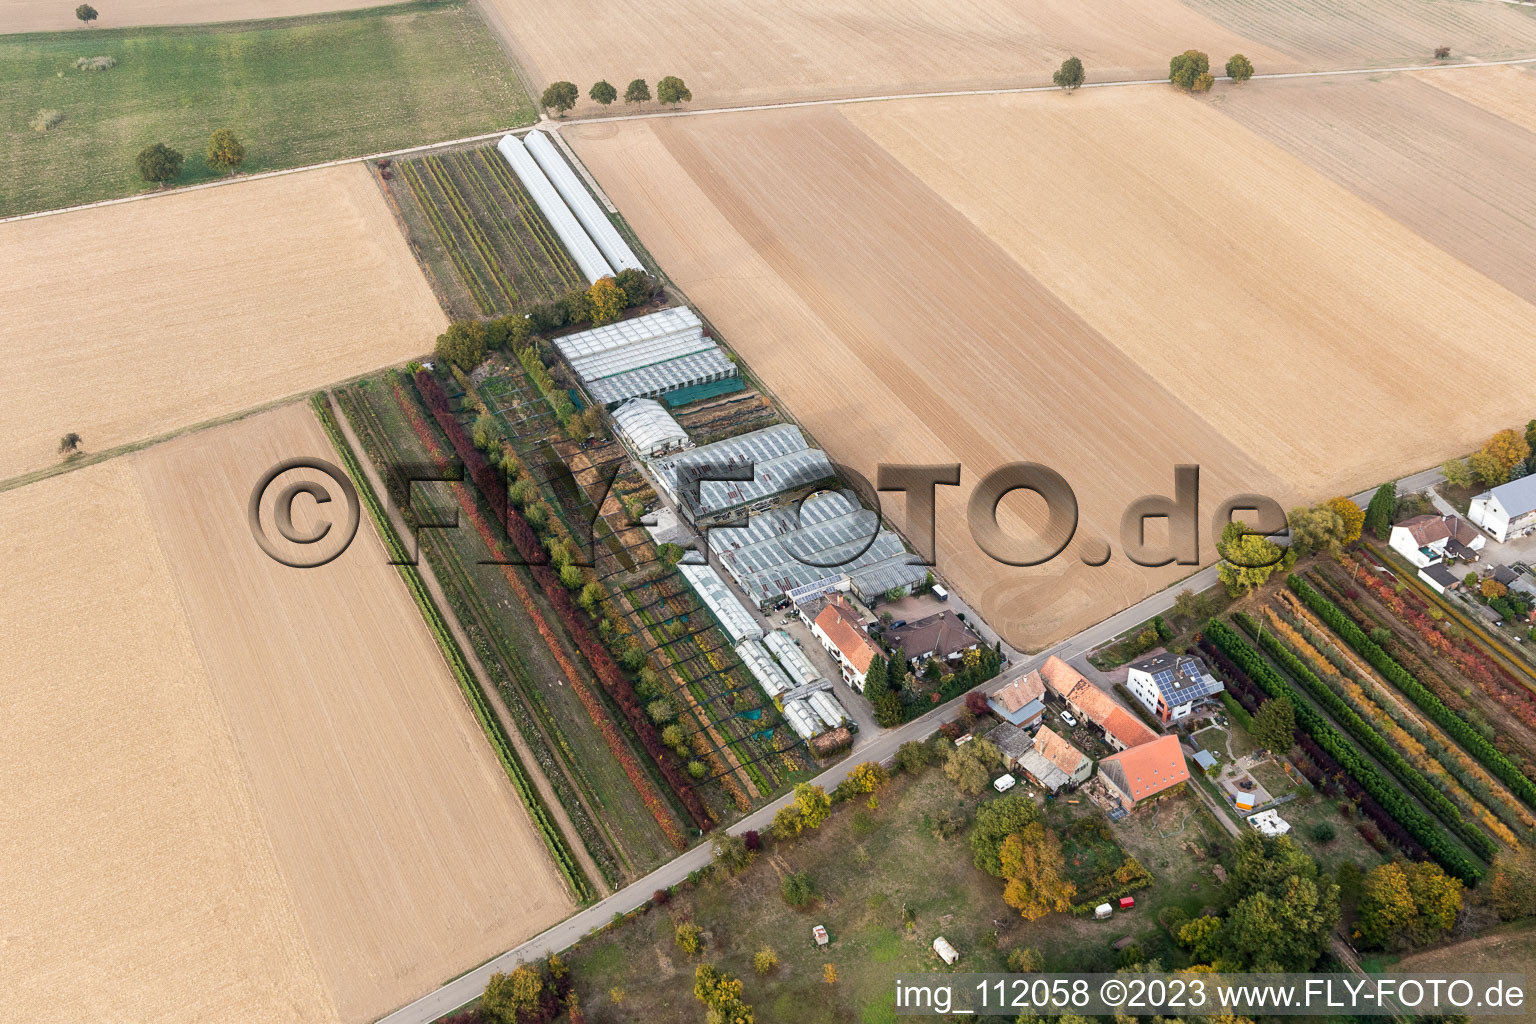 Vollmersweiler im Bundesland Rheinland-Pfalz, Deutschland aus der Luft betrachtet